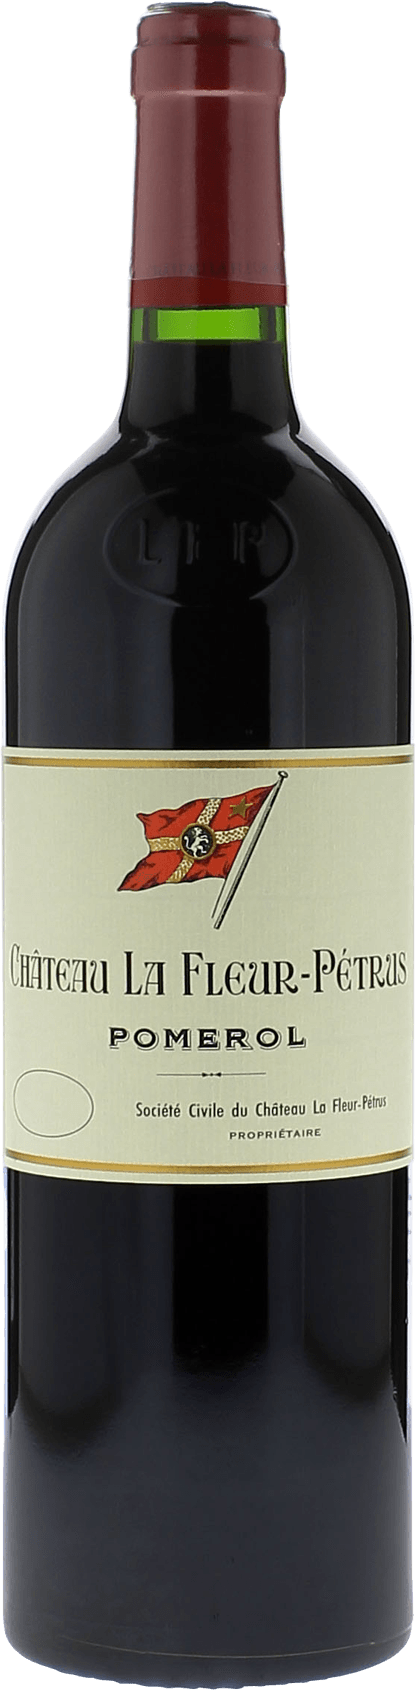 La fleur petrus 1974  Pomerol, Bordeaux rouge